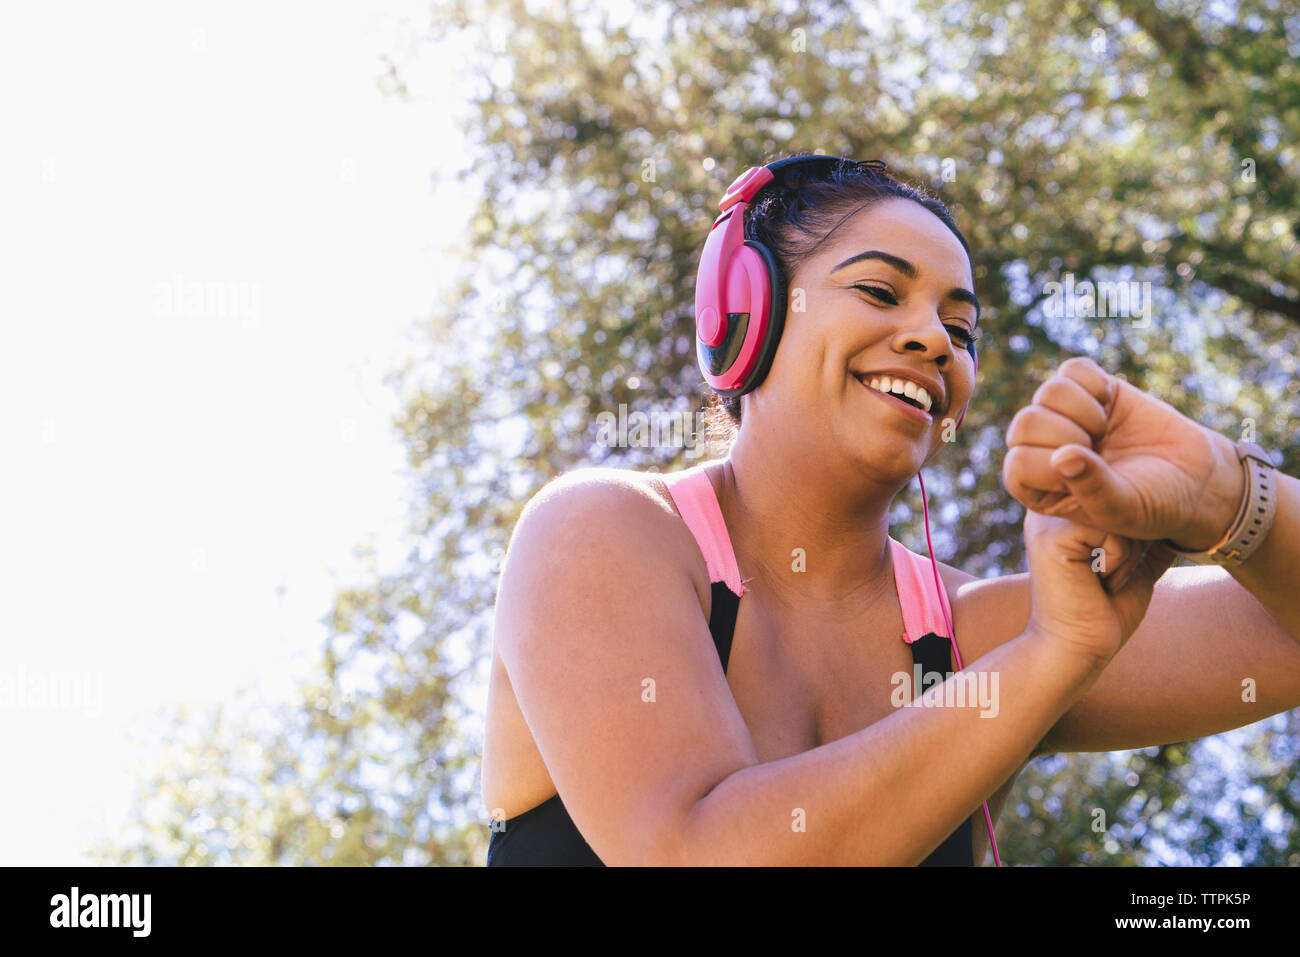 Basso angolo di visione della donna felice guardando il tracker di fitness mentre si ascolta la musica al parco Foto Stock